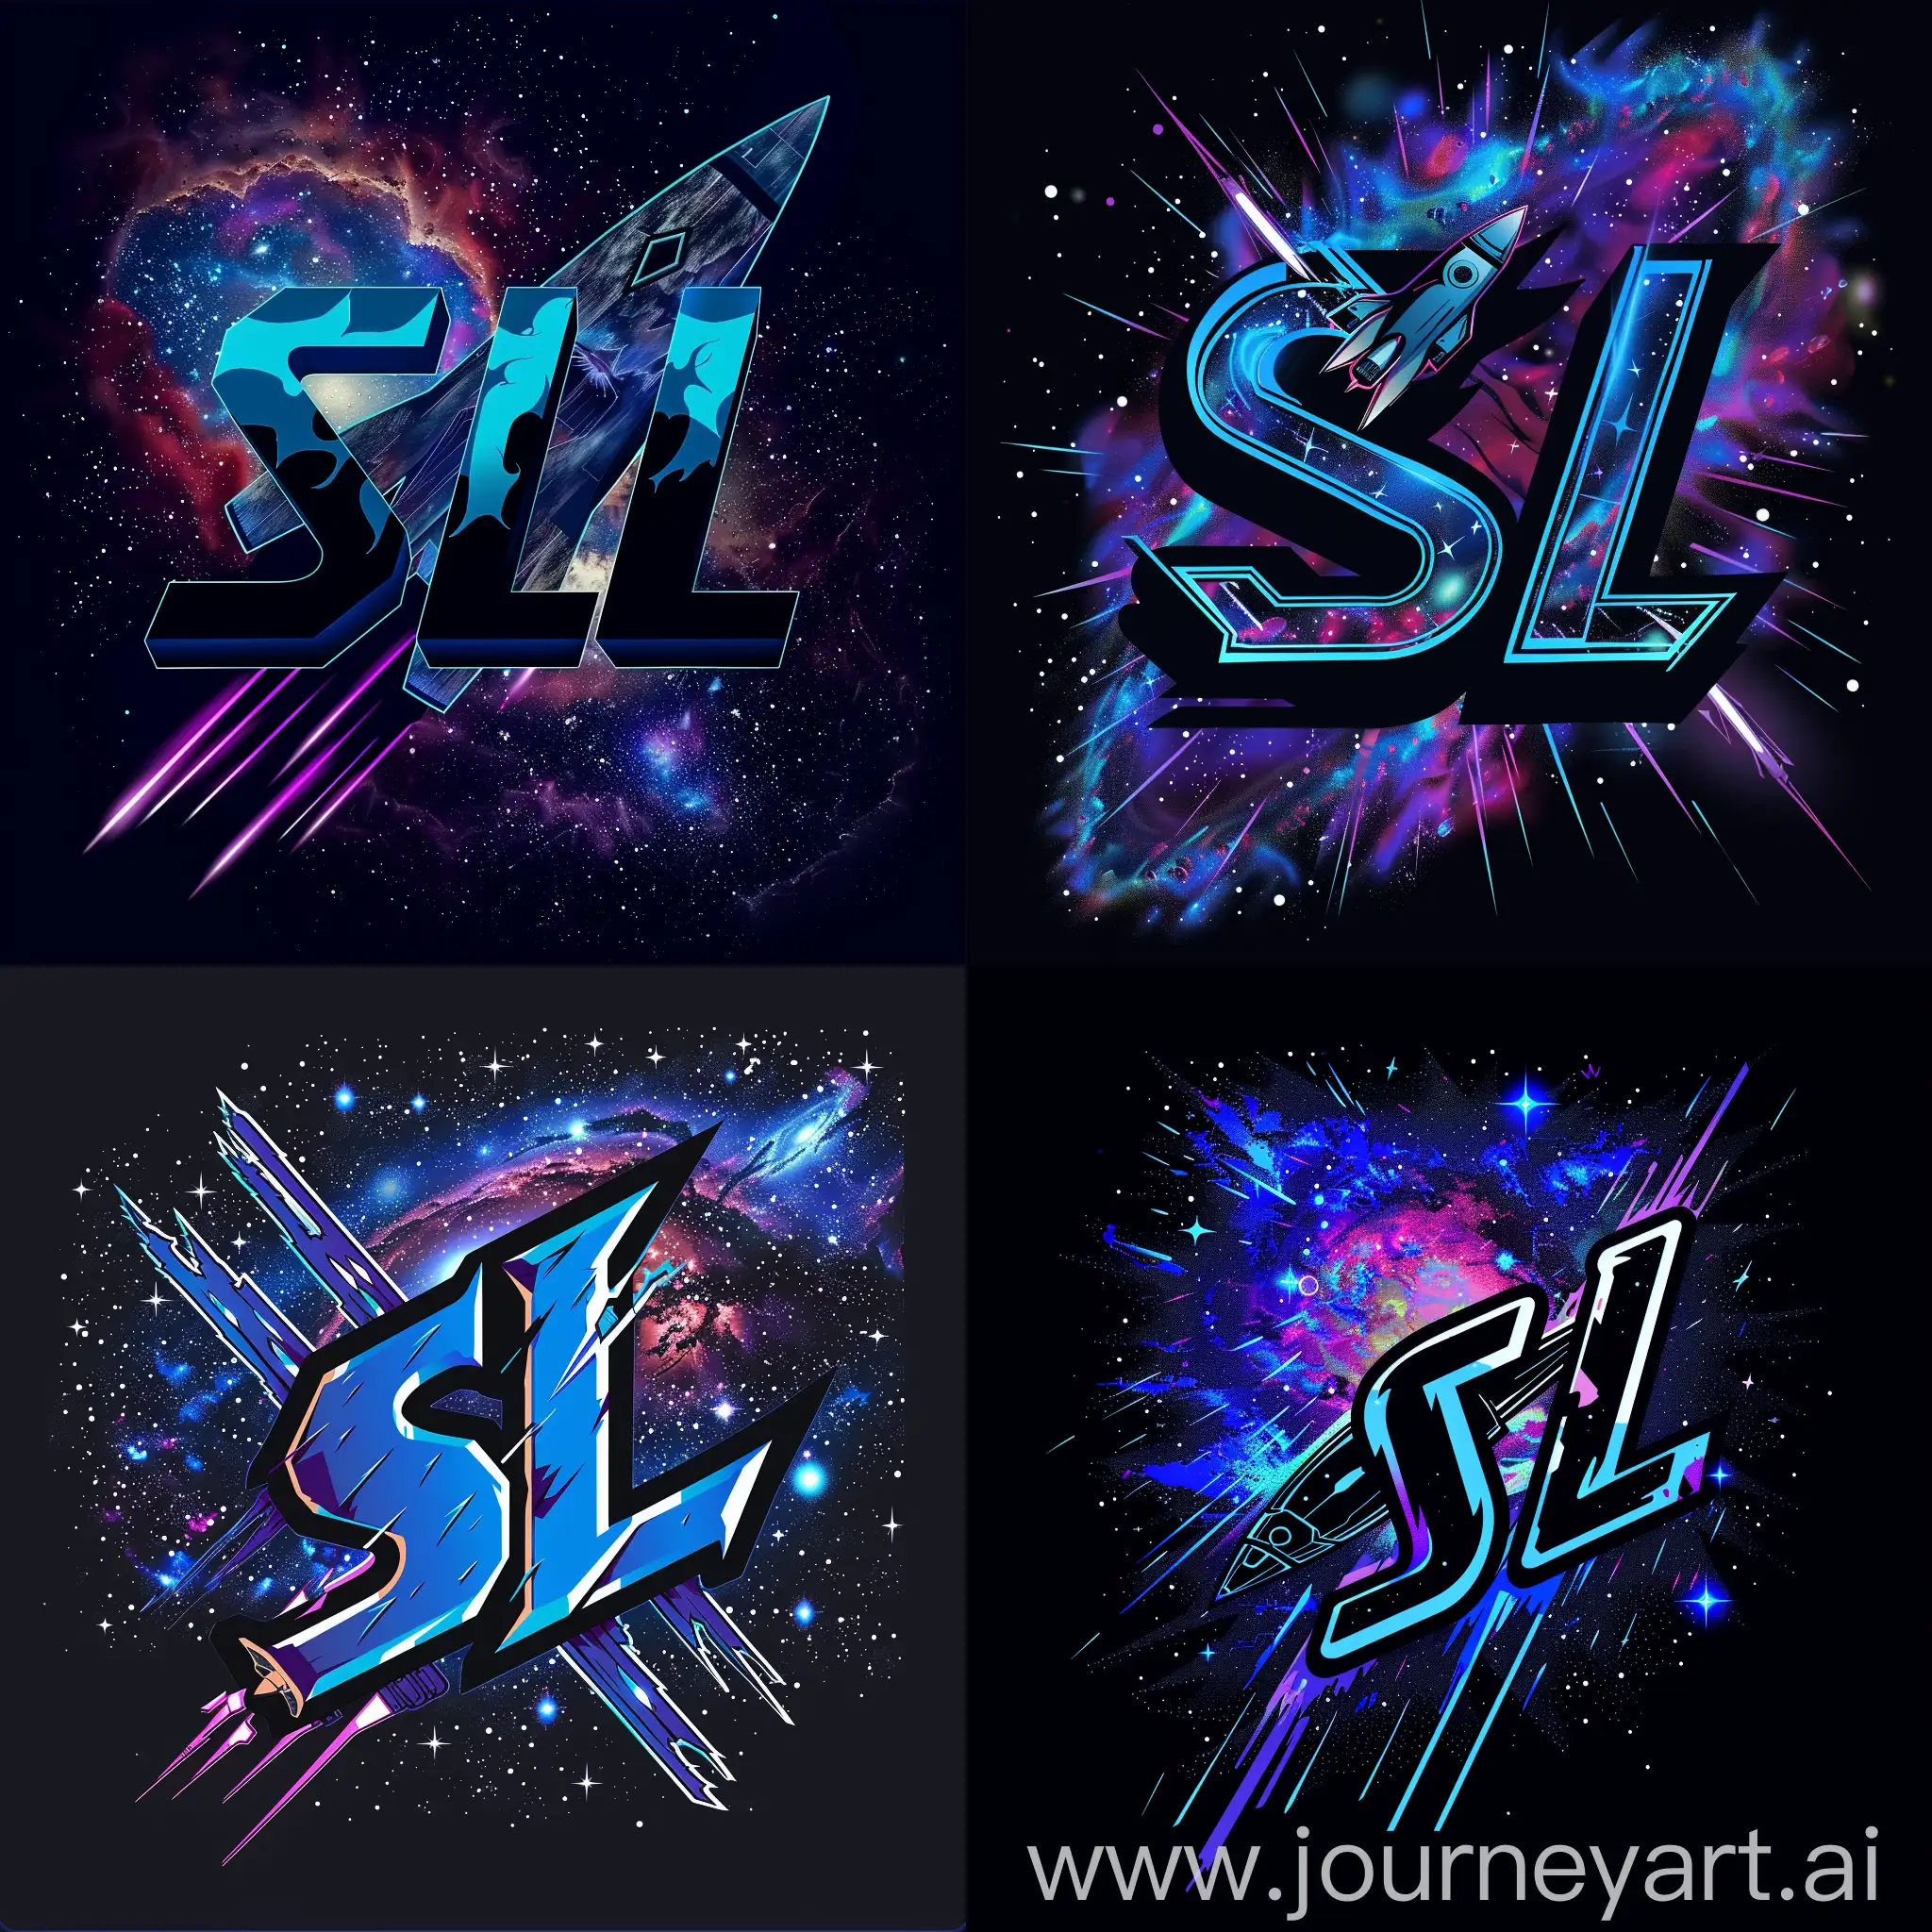 Логотип "SL" имеет форму космического корабля, который пронизывает звездное небо с элементами галактики в фоне, буквы "SL" стилизованы в виде космических лучей и пульсирующих энергетических потоков, цветовая гамма логотипа созвучна с космической тематикой, синий, фиолетовый и черный